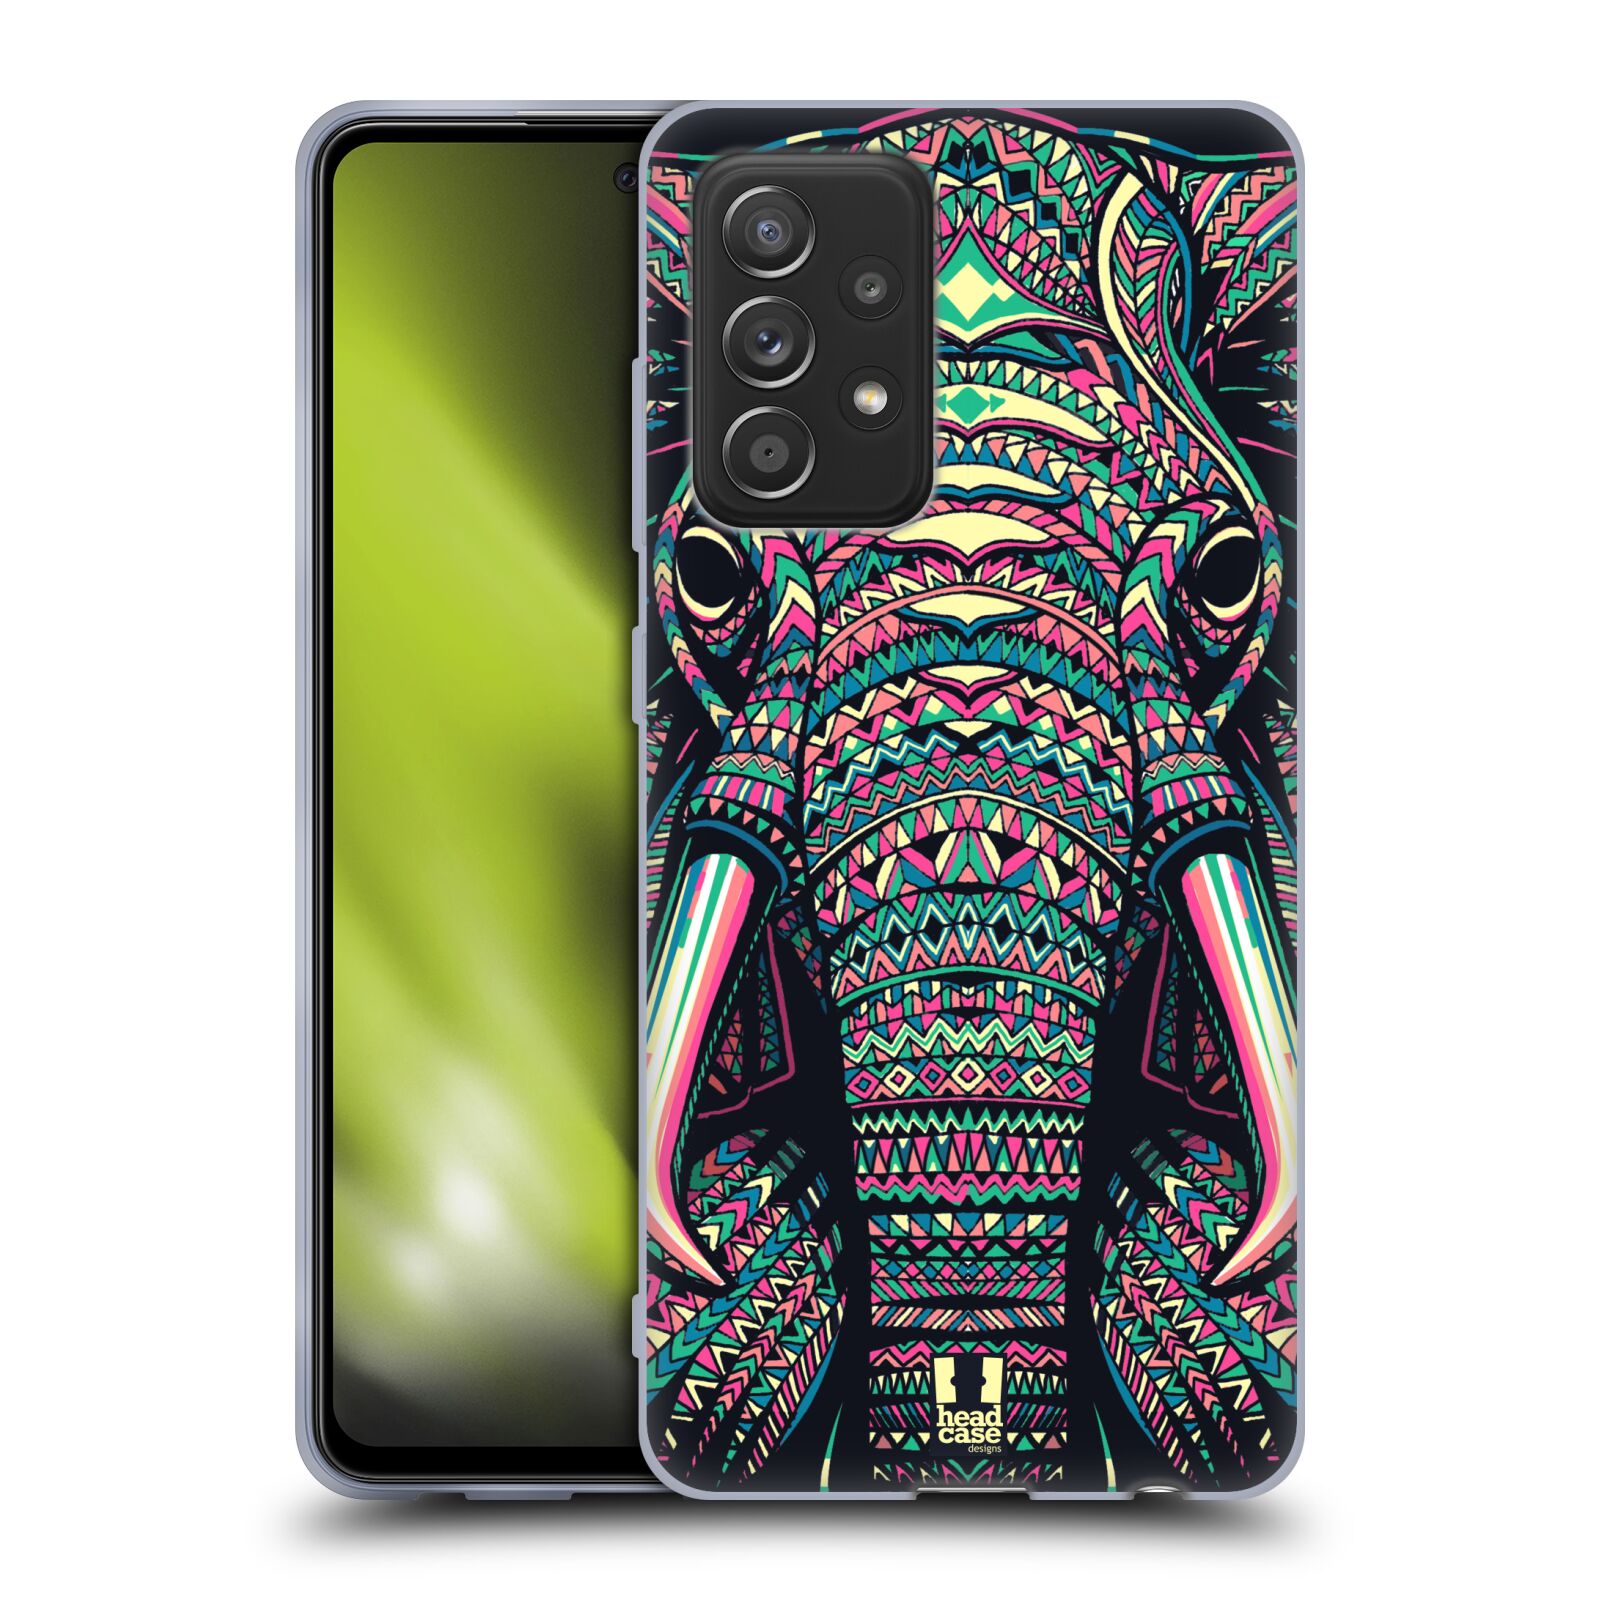 Plastový obal HEAD CASE na mobil Samsung Galaxy A52 / A52 5G / A52s 5G vzor Aztécký motiv zvíře 2 slon